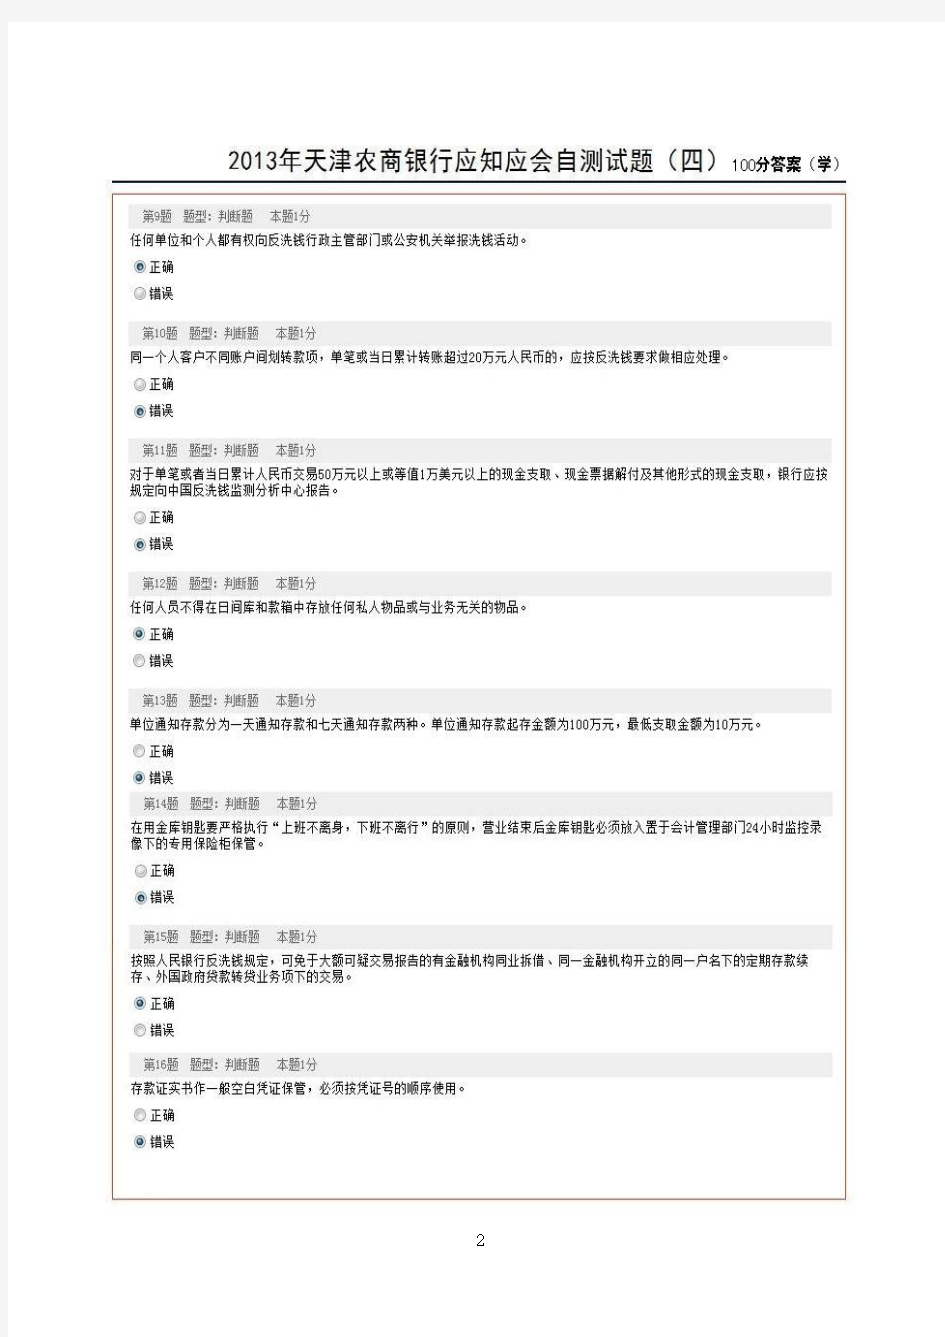 2013年天津农商银行应知应会自测试题(四)(100分答案)